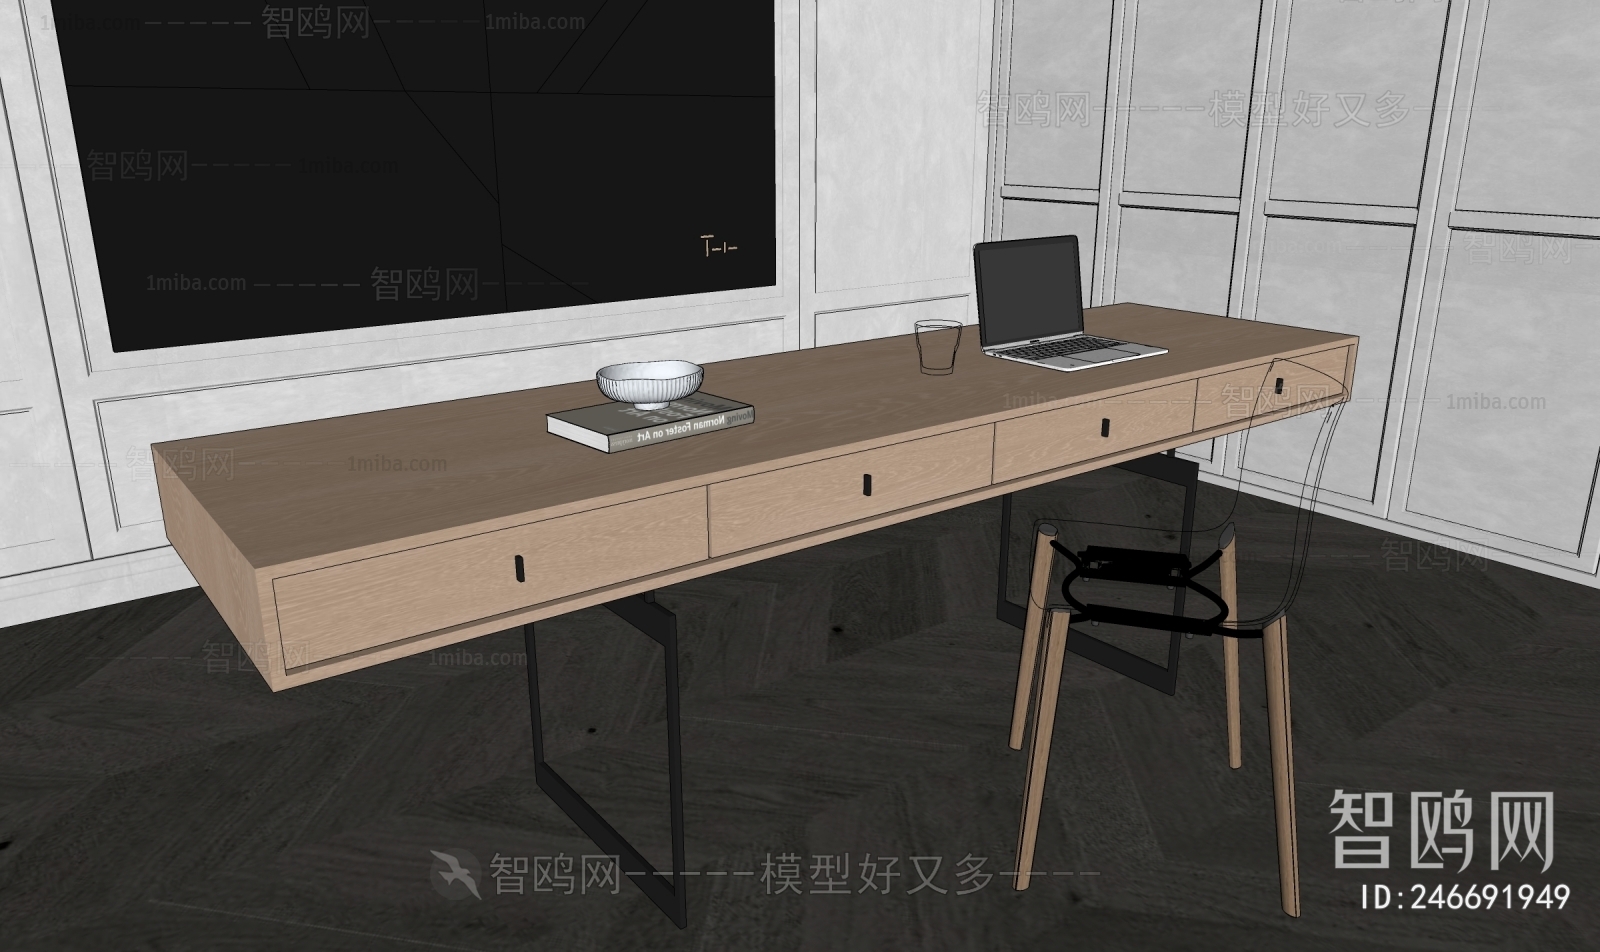 Wabi-sabi Style Desk